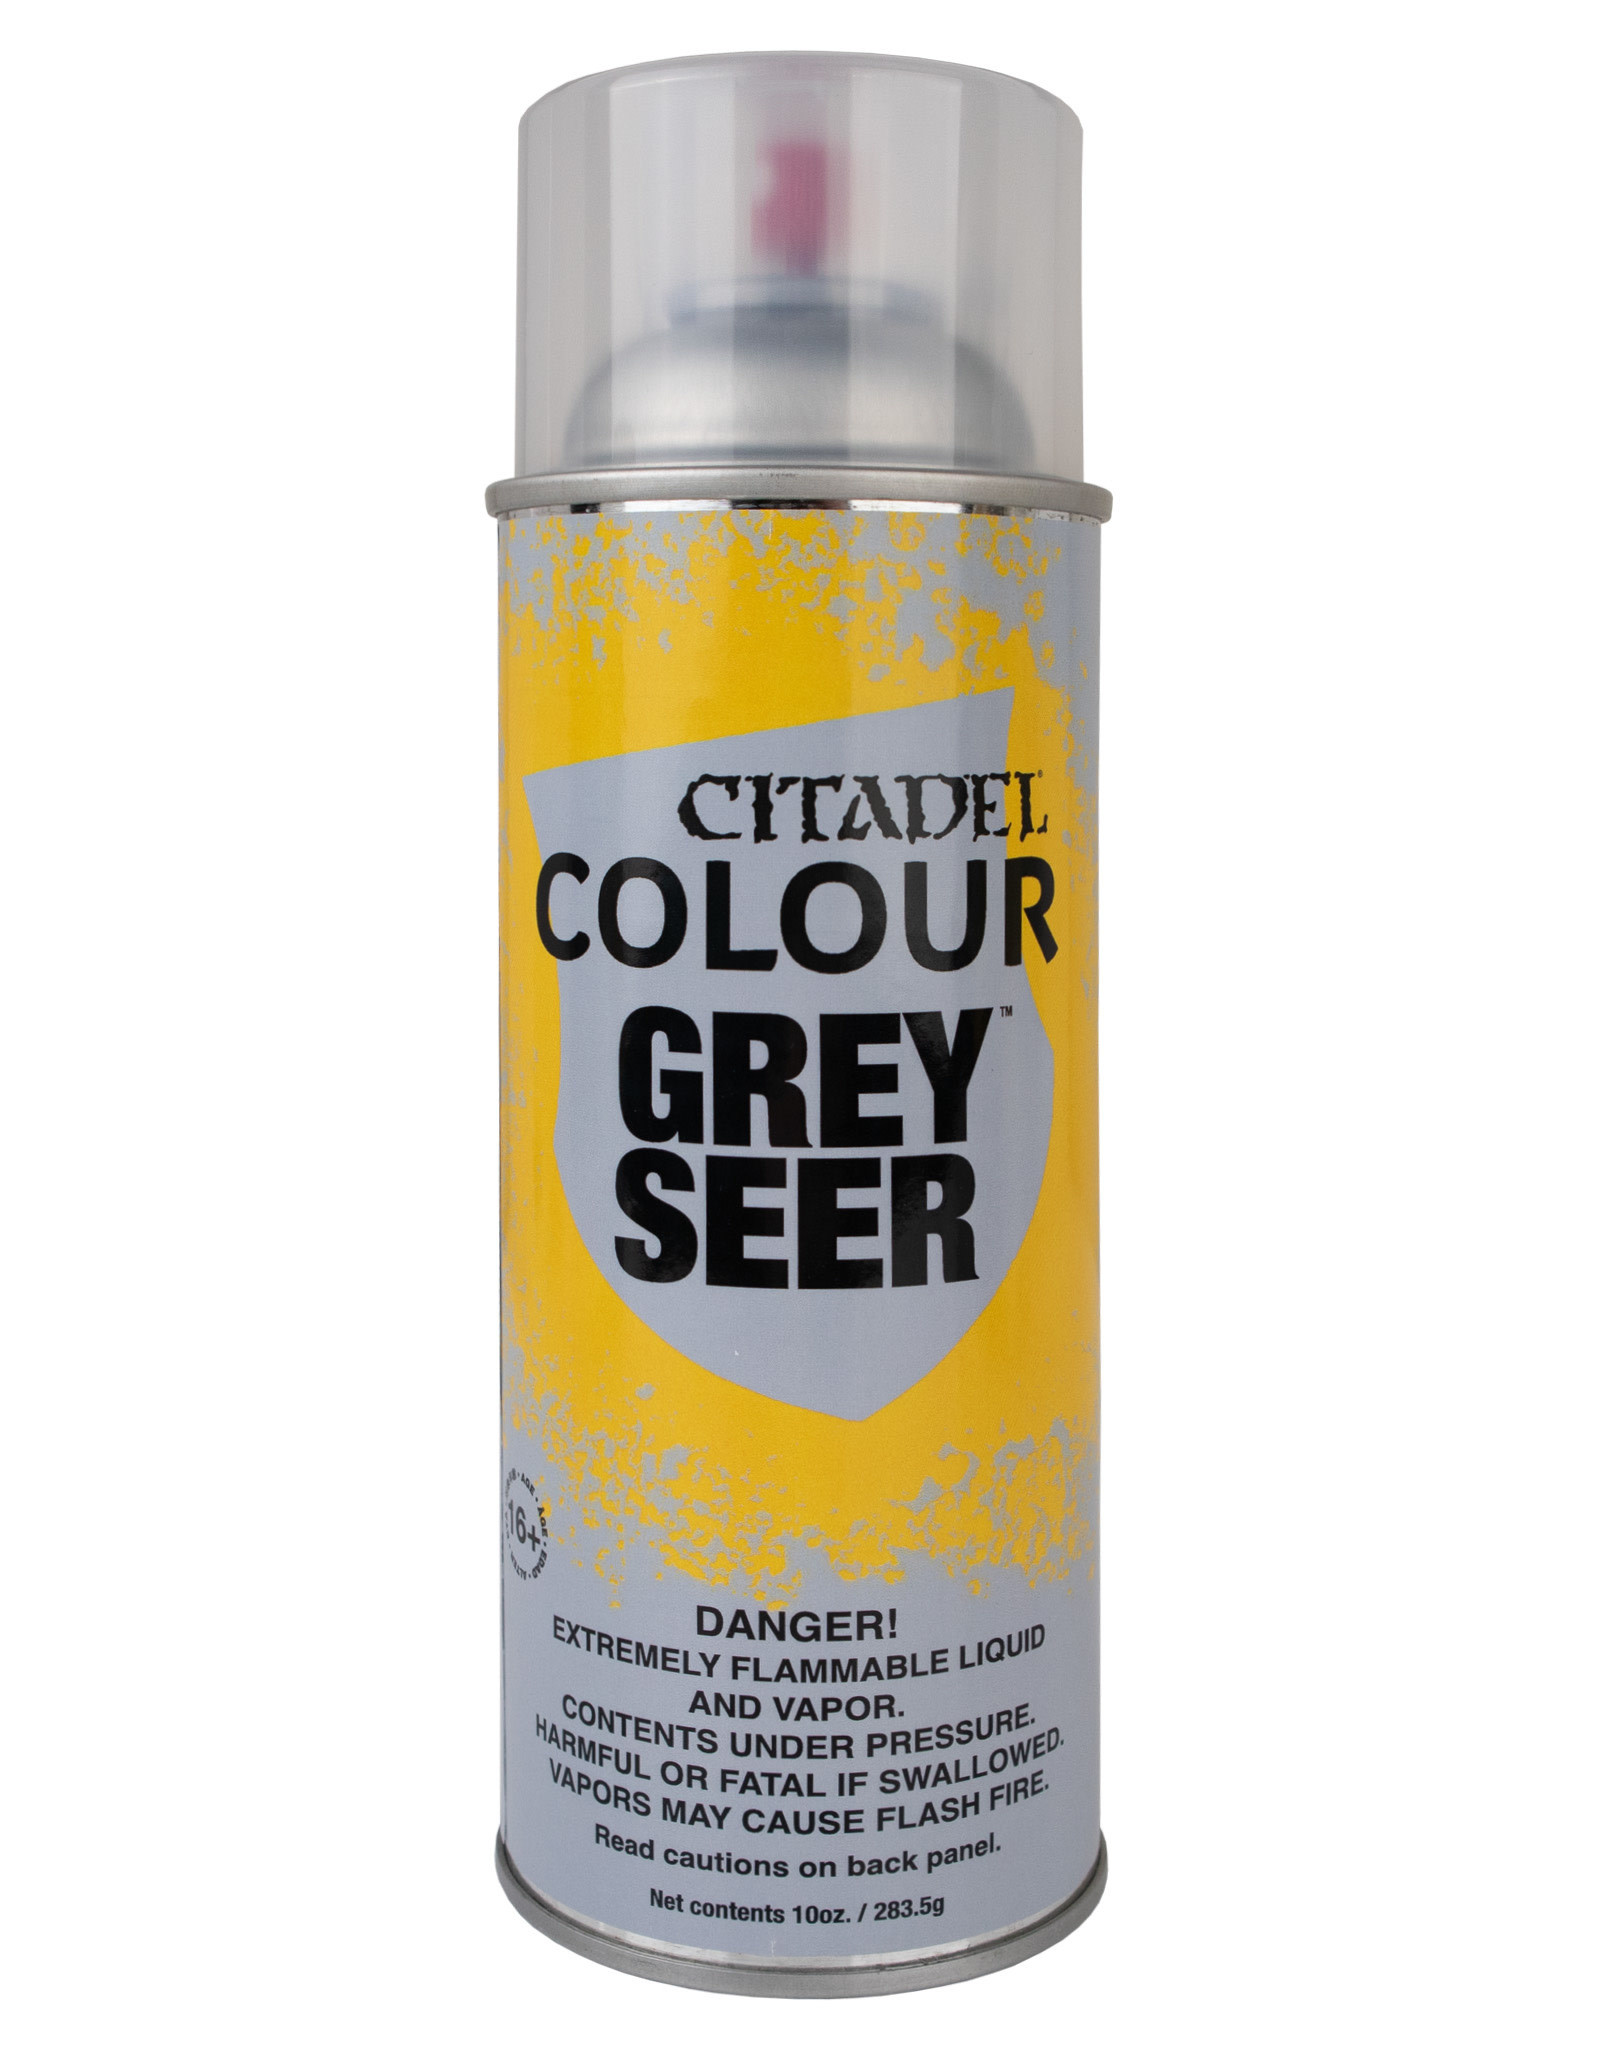 Games Workshop Grey Seer Spray Paint